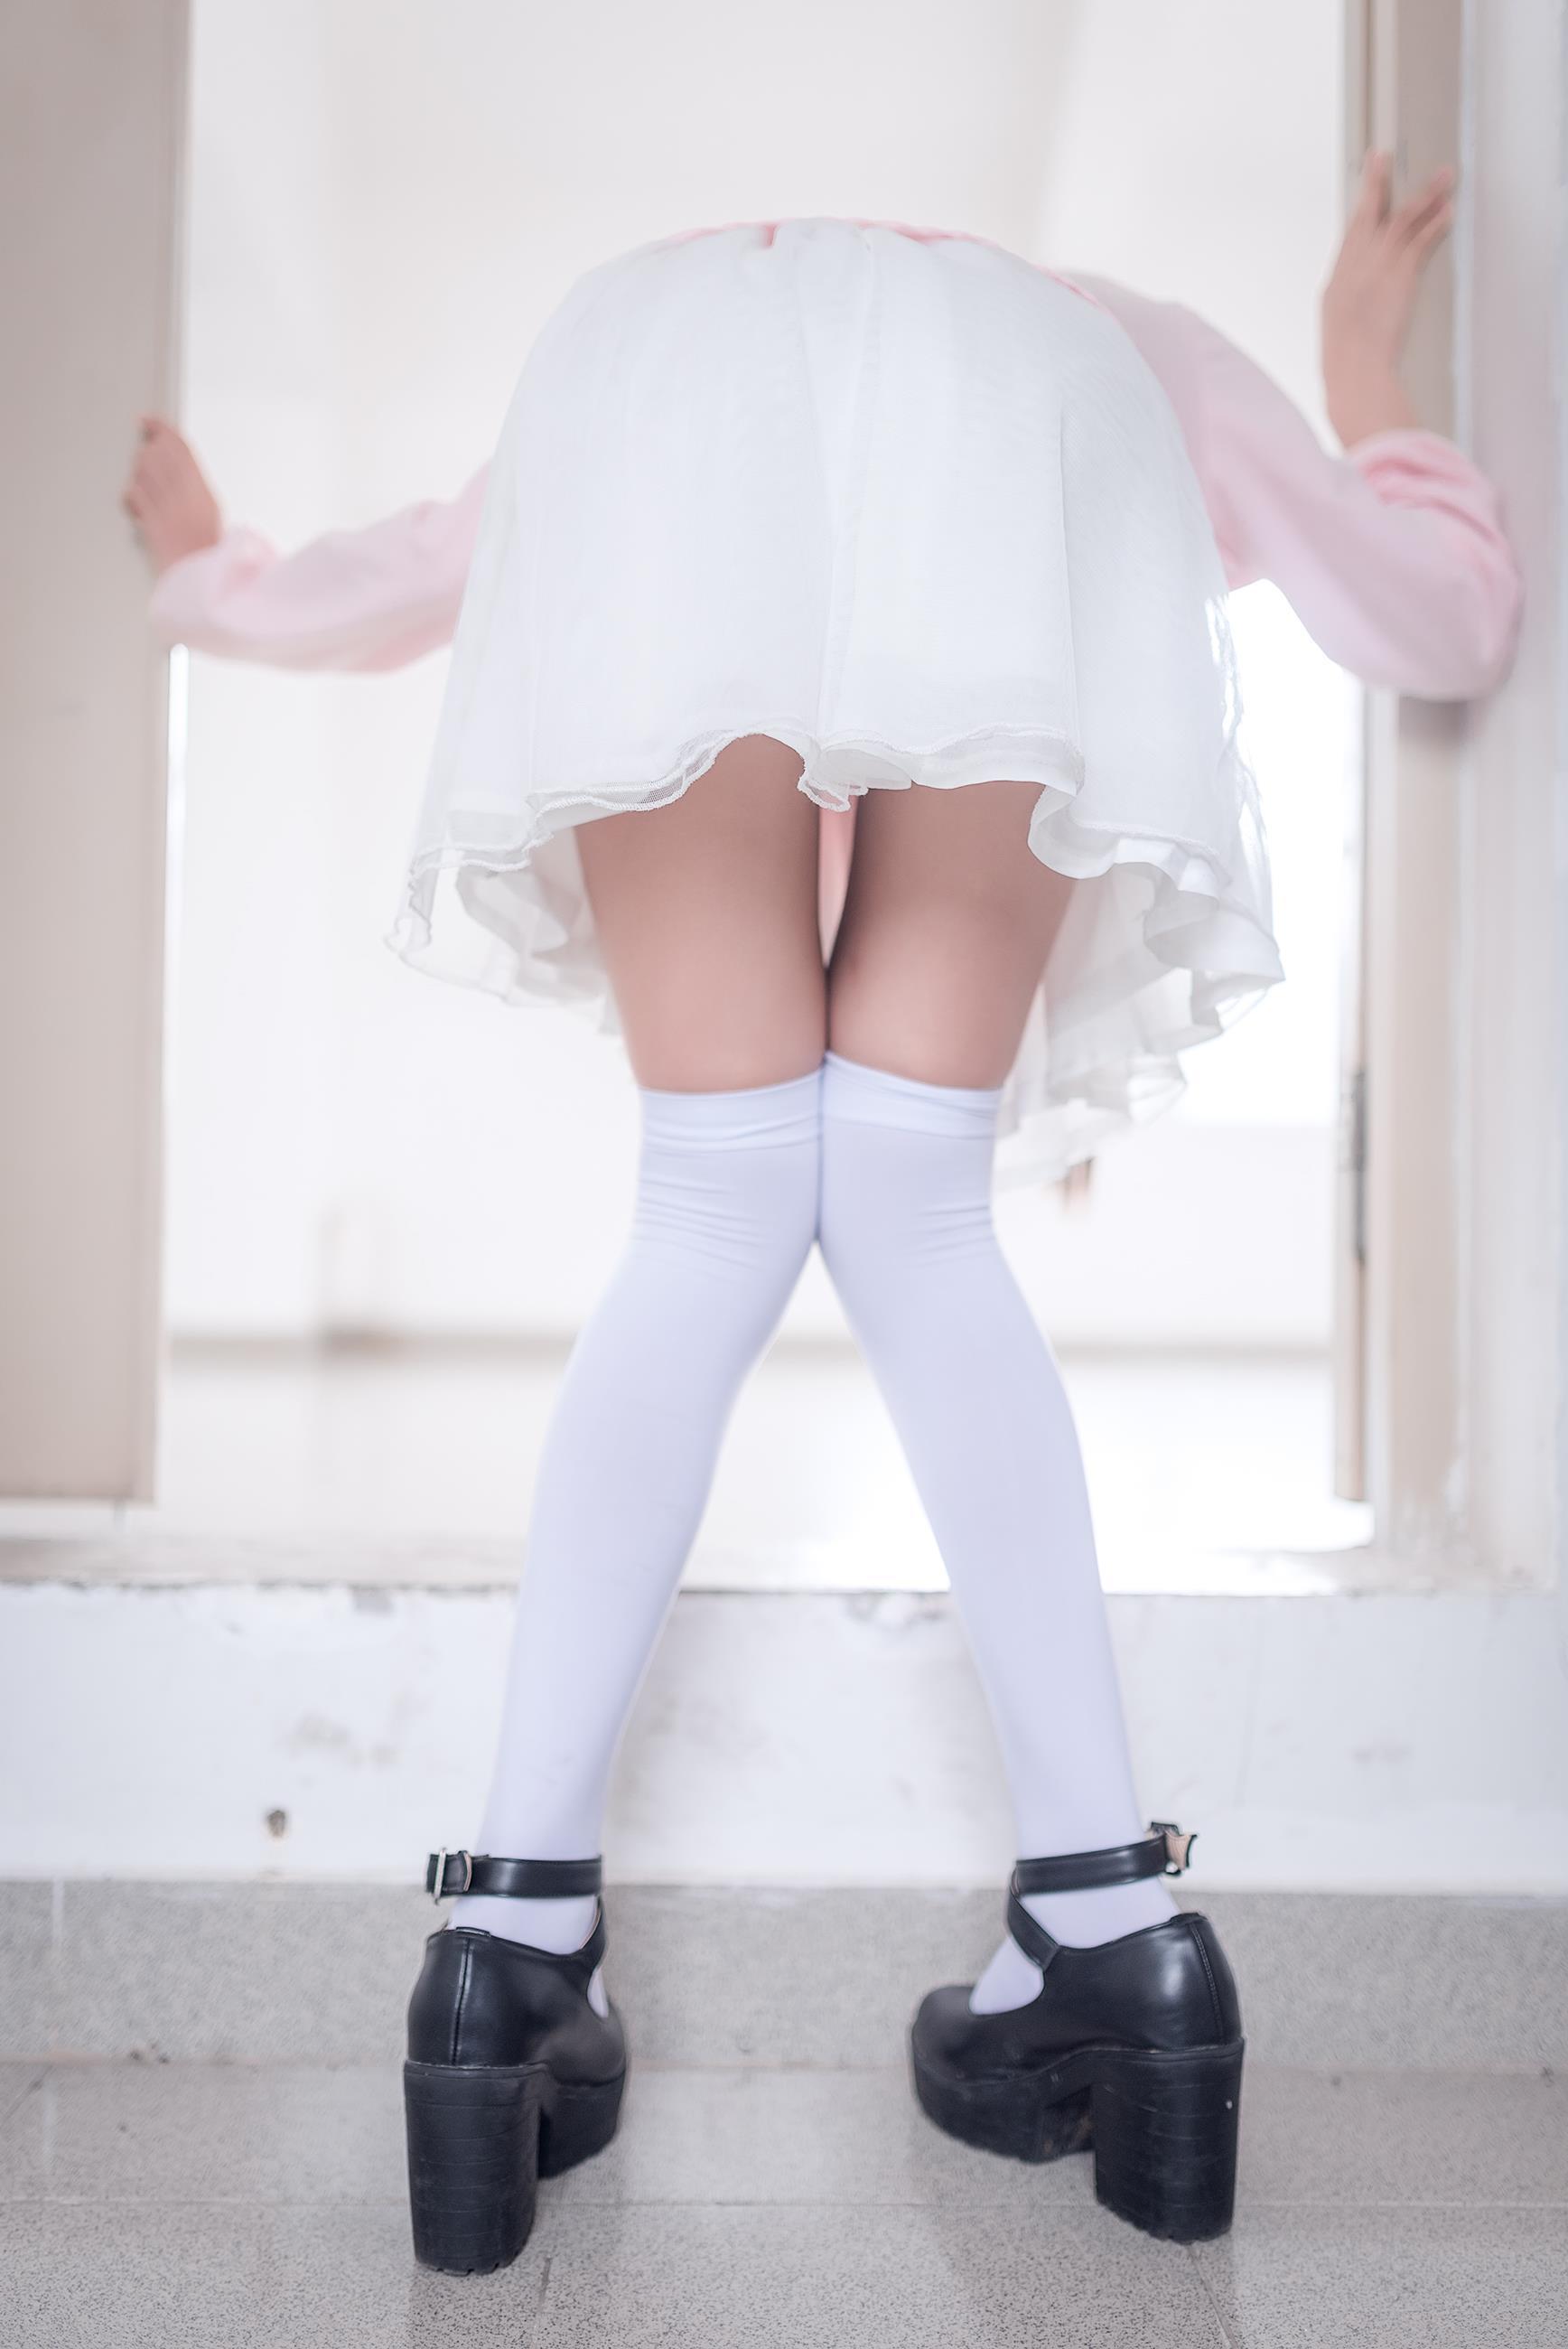 [风之领域]NO.050 性感小萝莉 粉色外套与白色透视短裙加白色丝袜美腿玉足私房写真集,